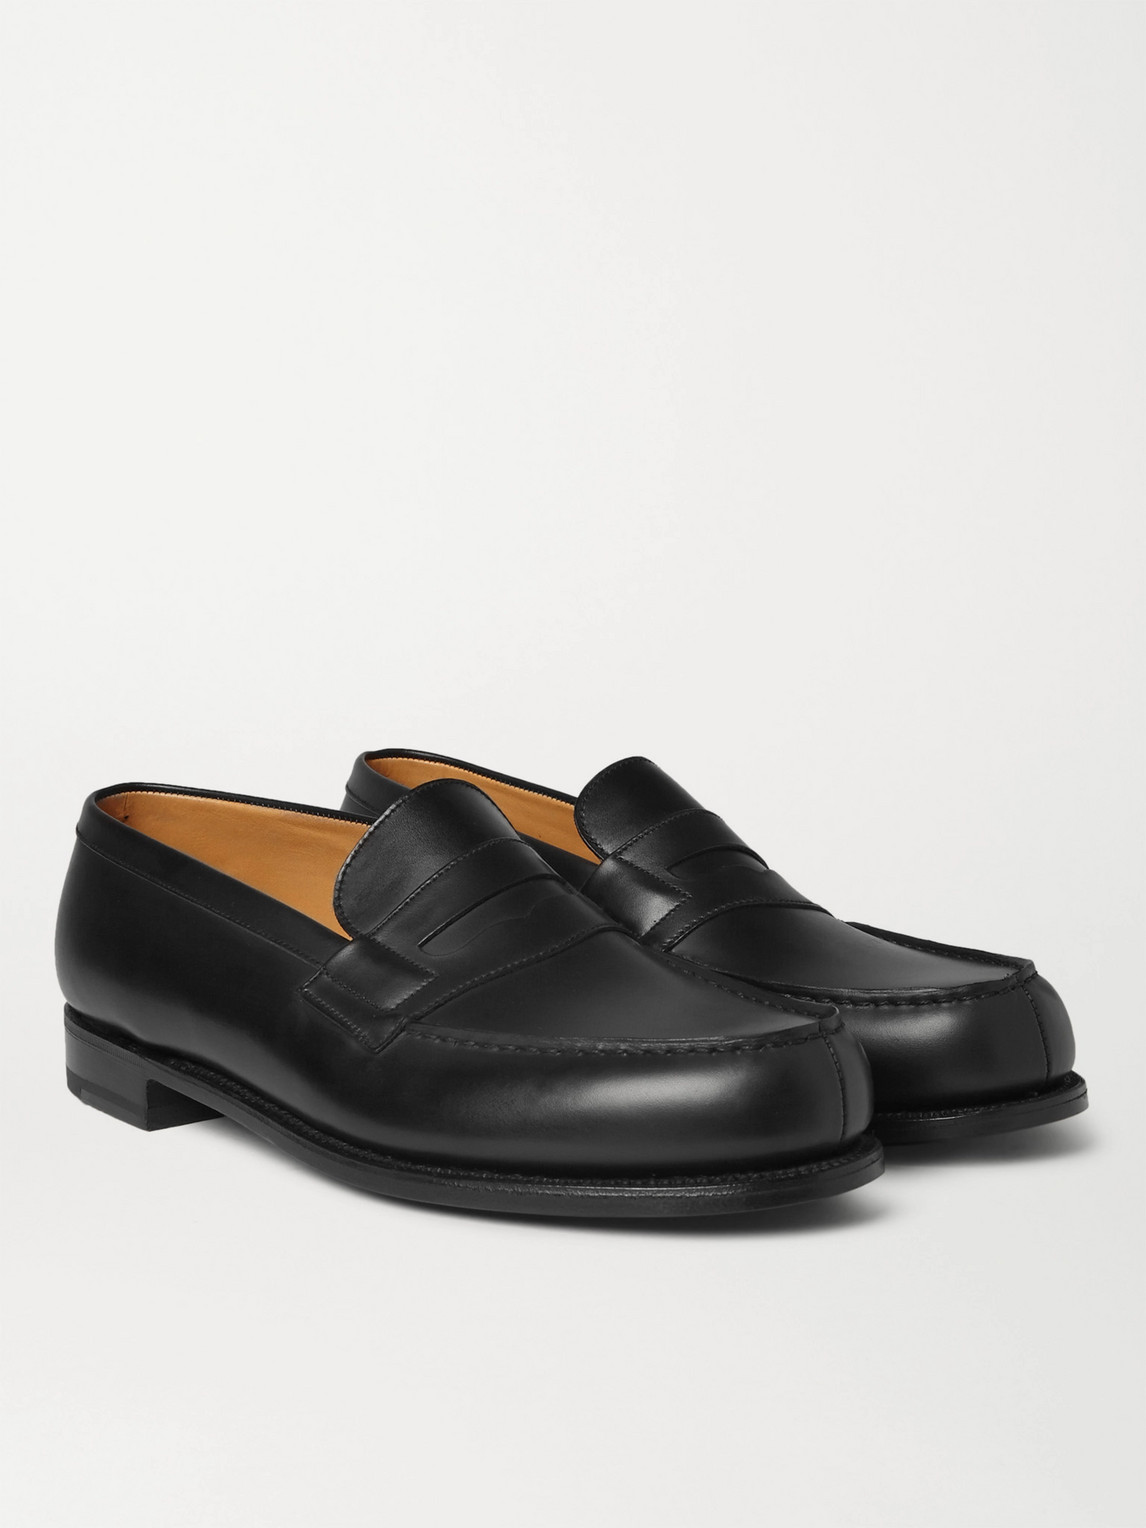 JM WESTON Shoes for Men | ModeSens